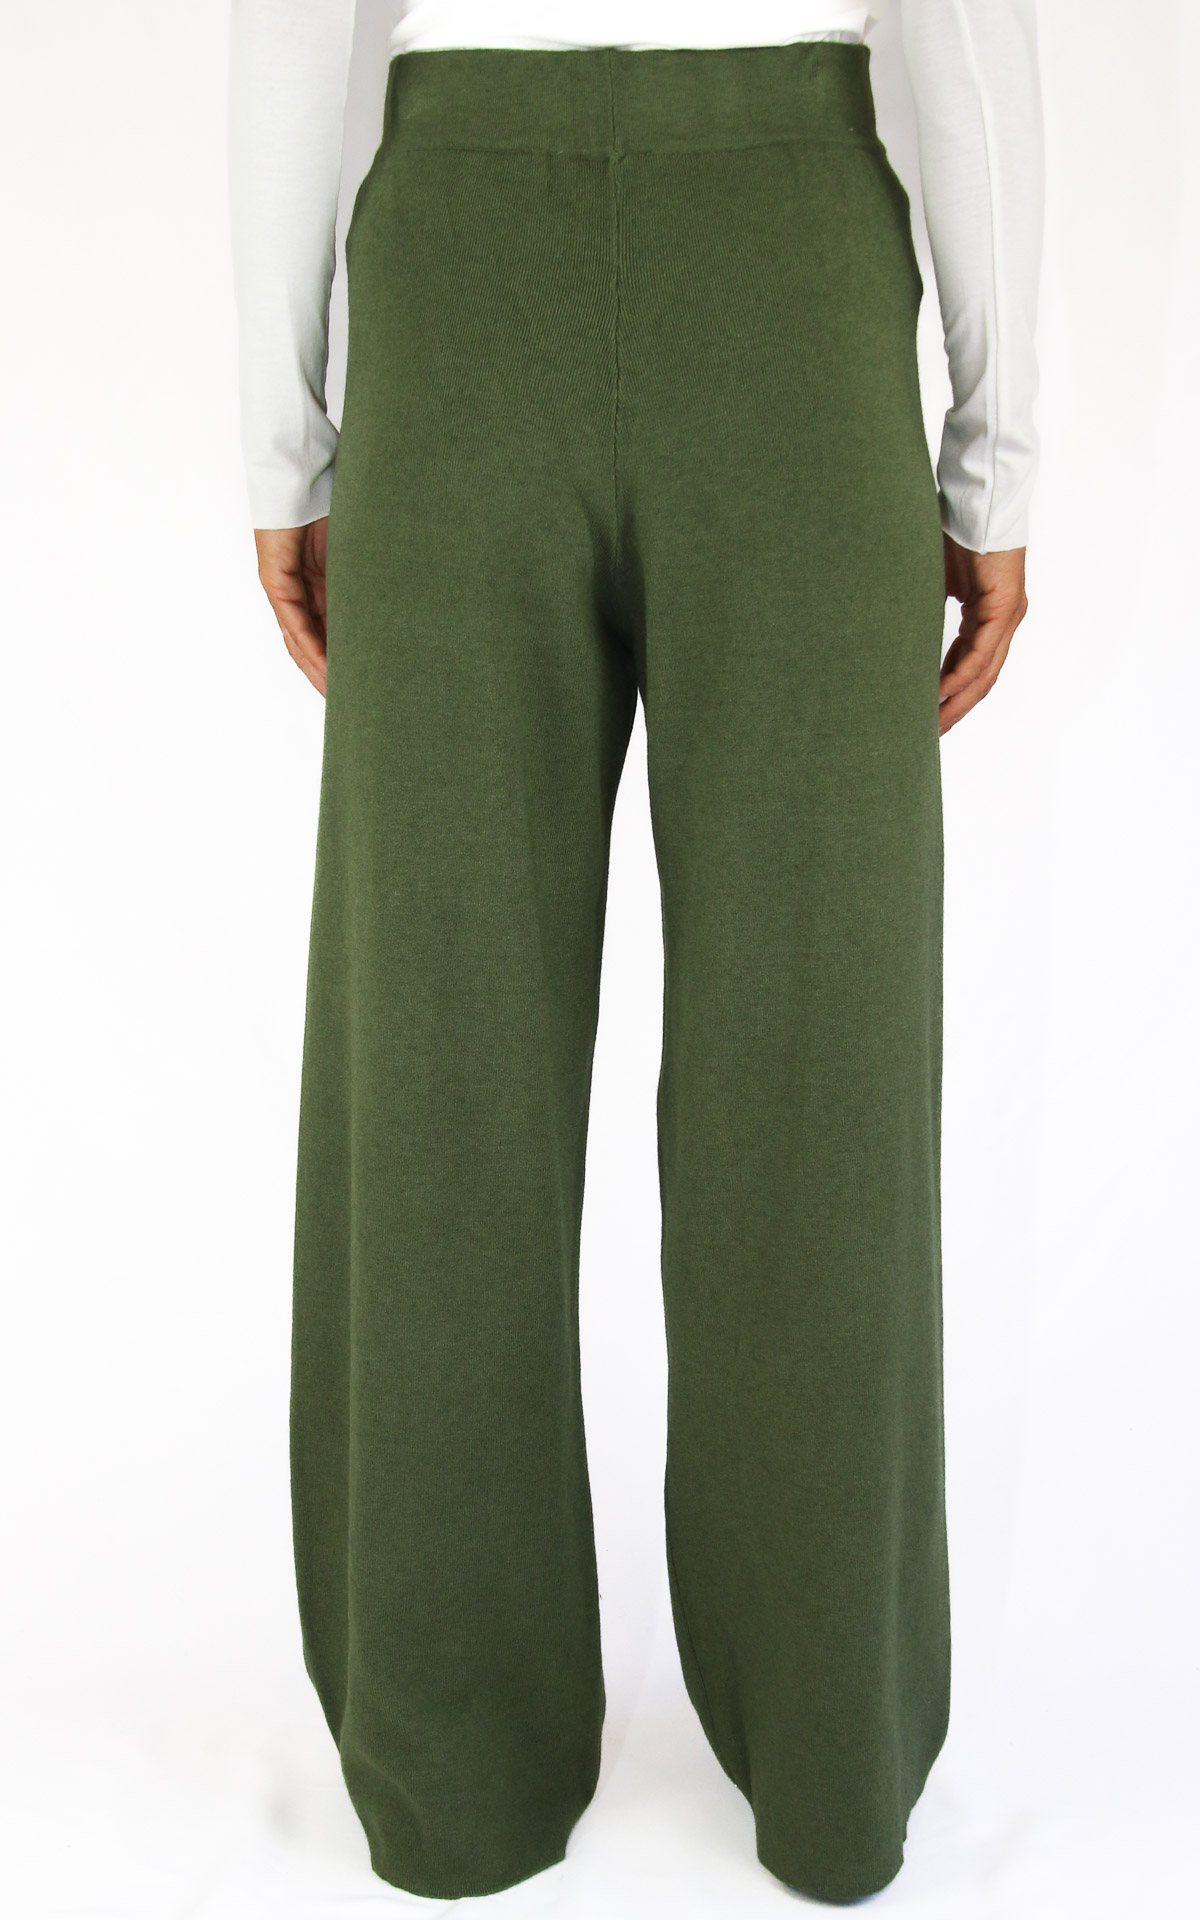 Initial - pantalone zampa - verde militare